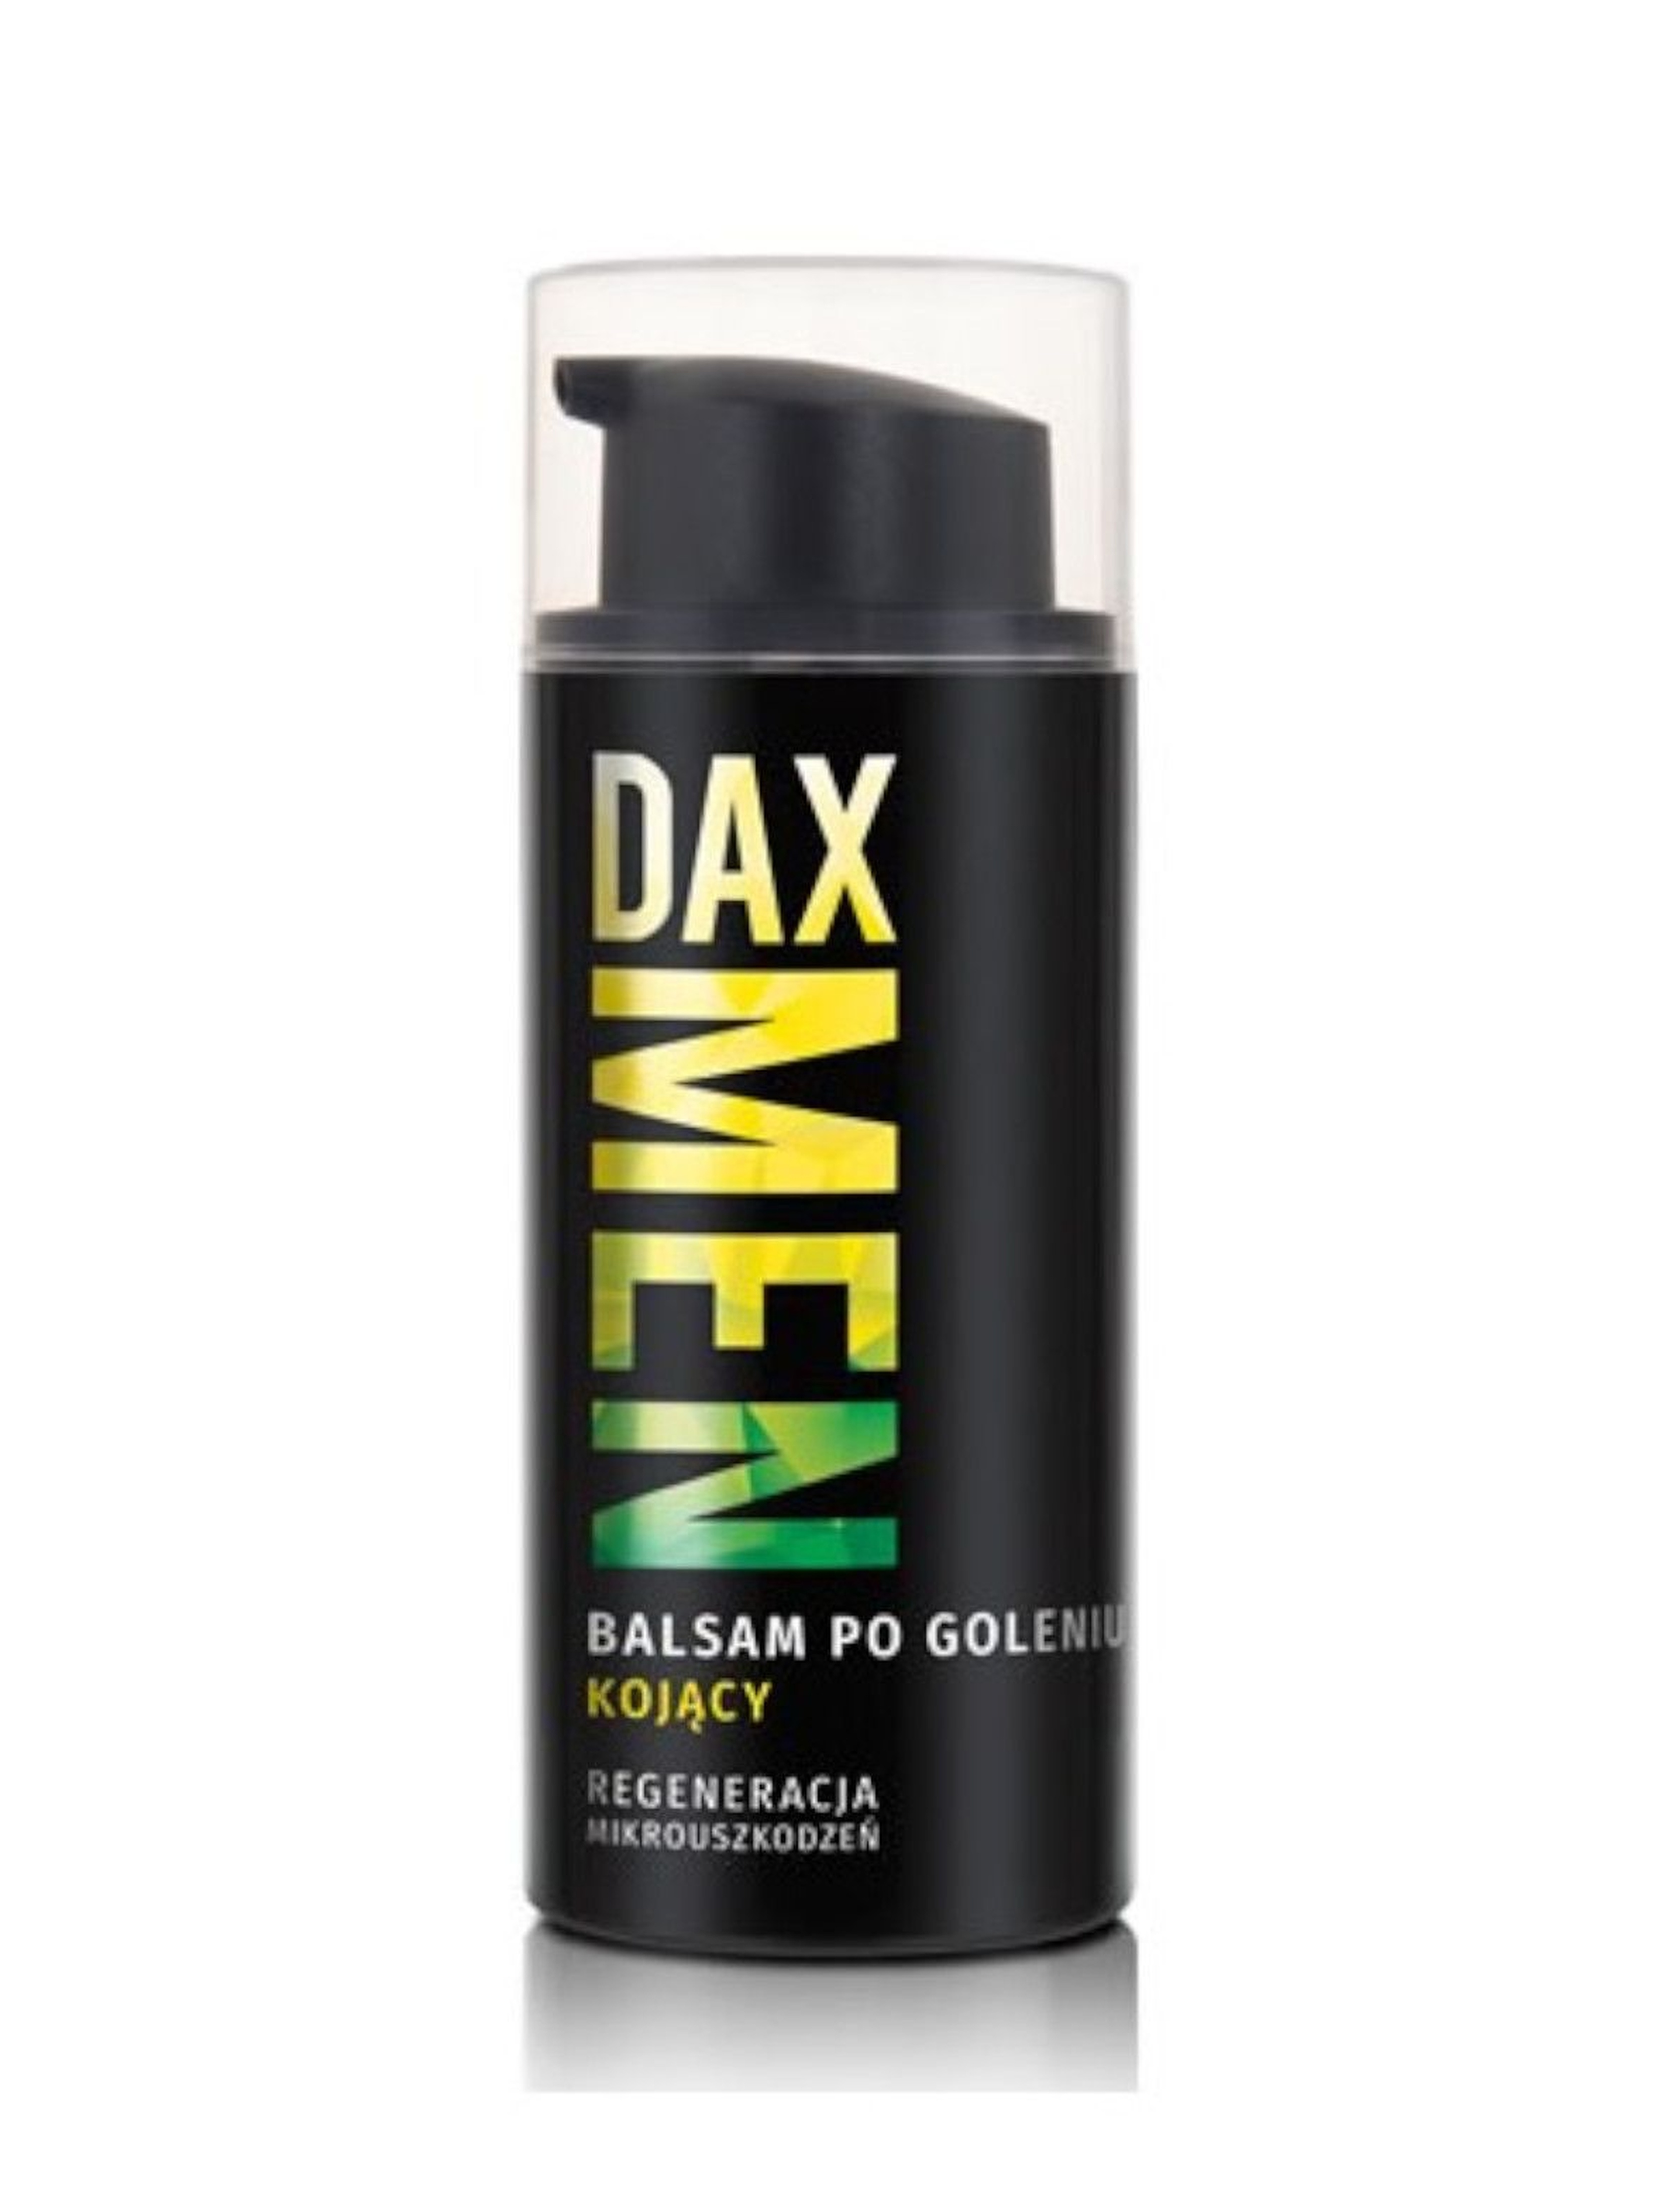 Dax Men, balsam po goleniu kojący, 100 ml